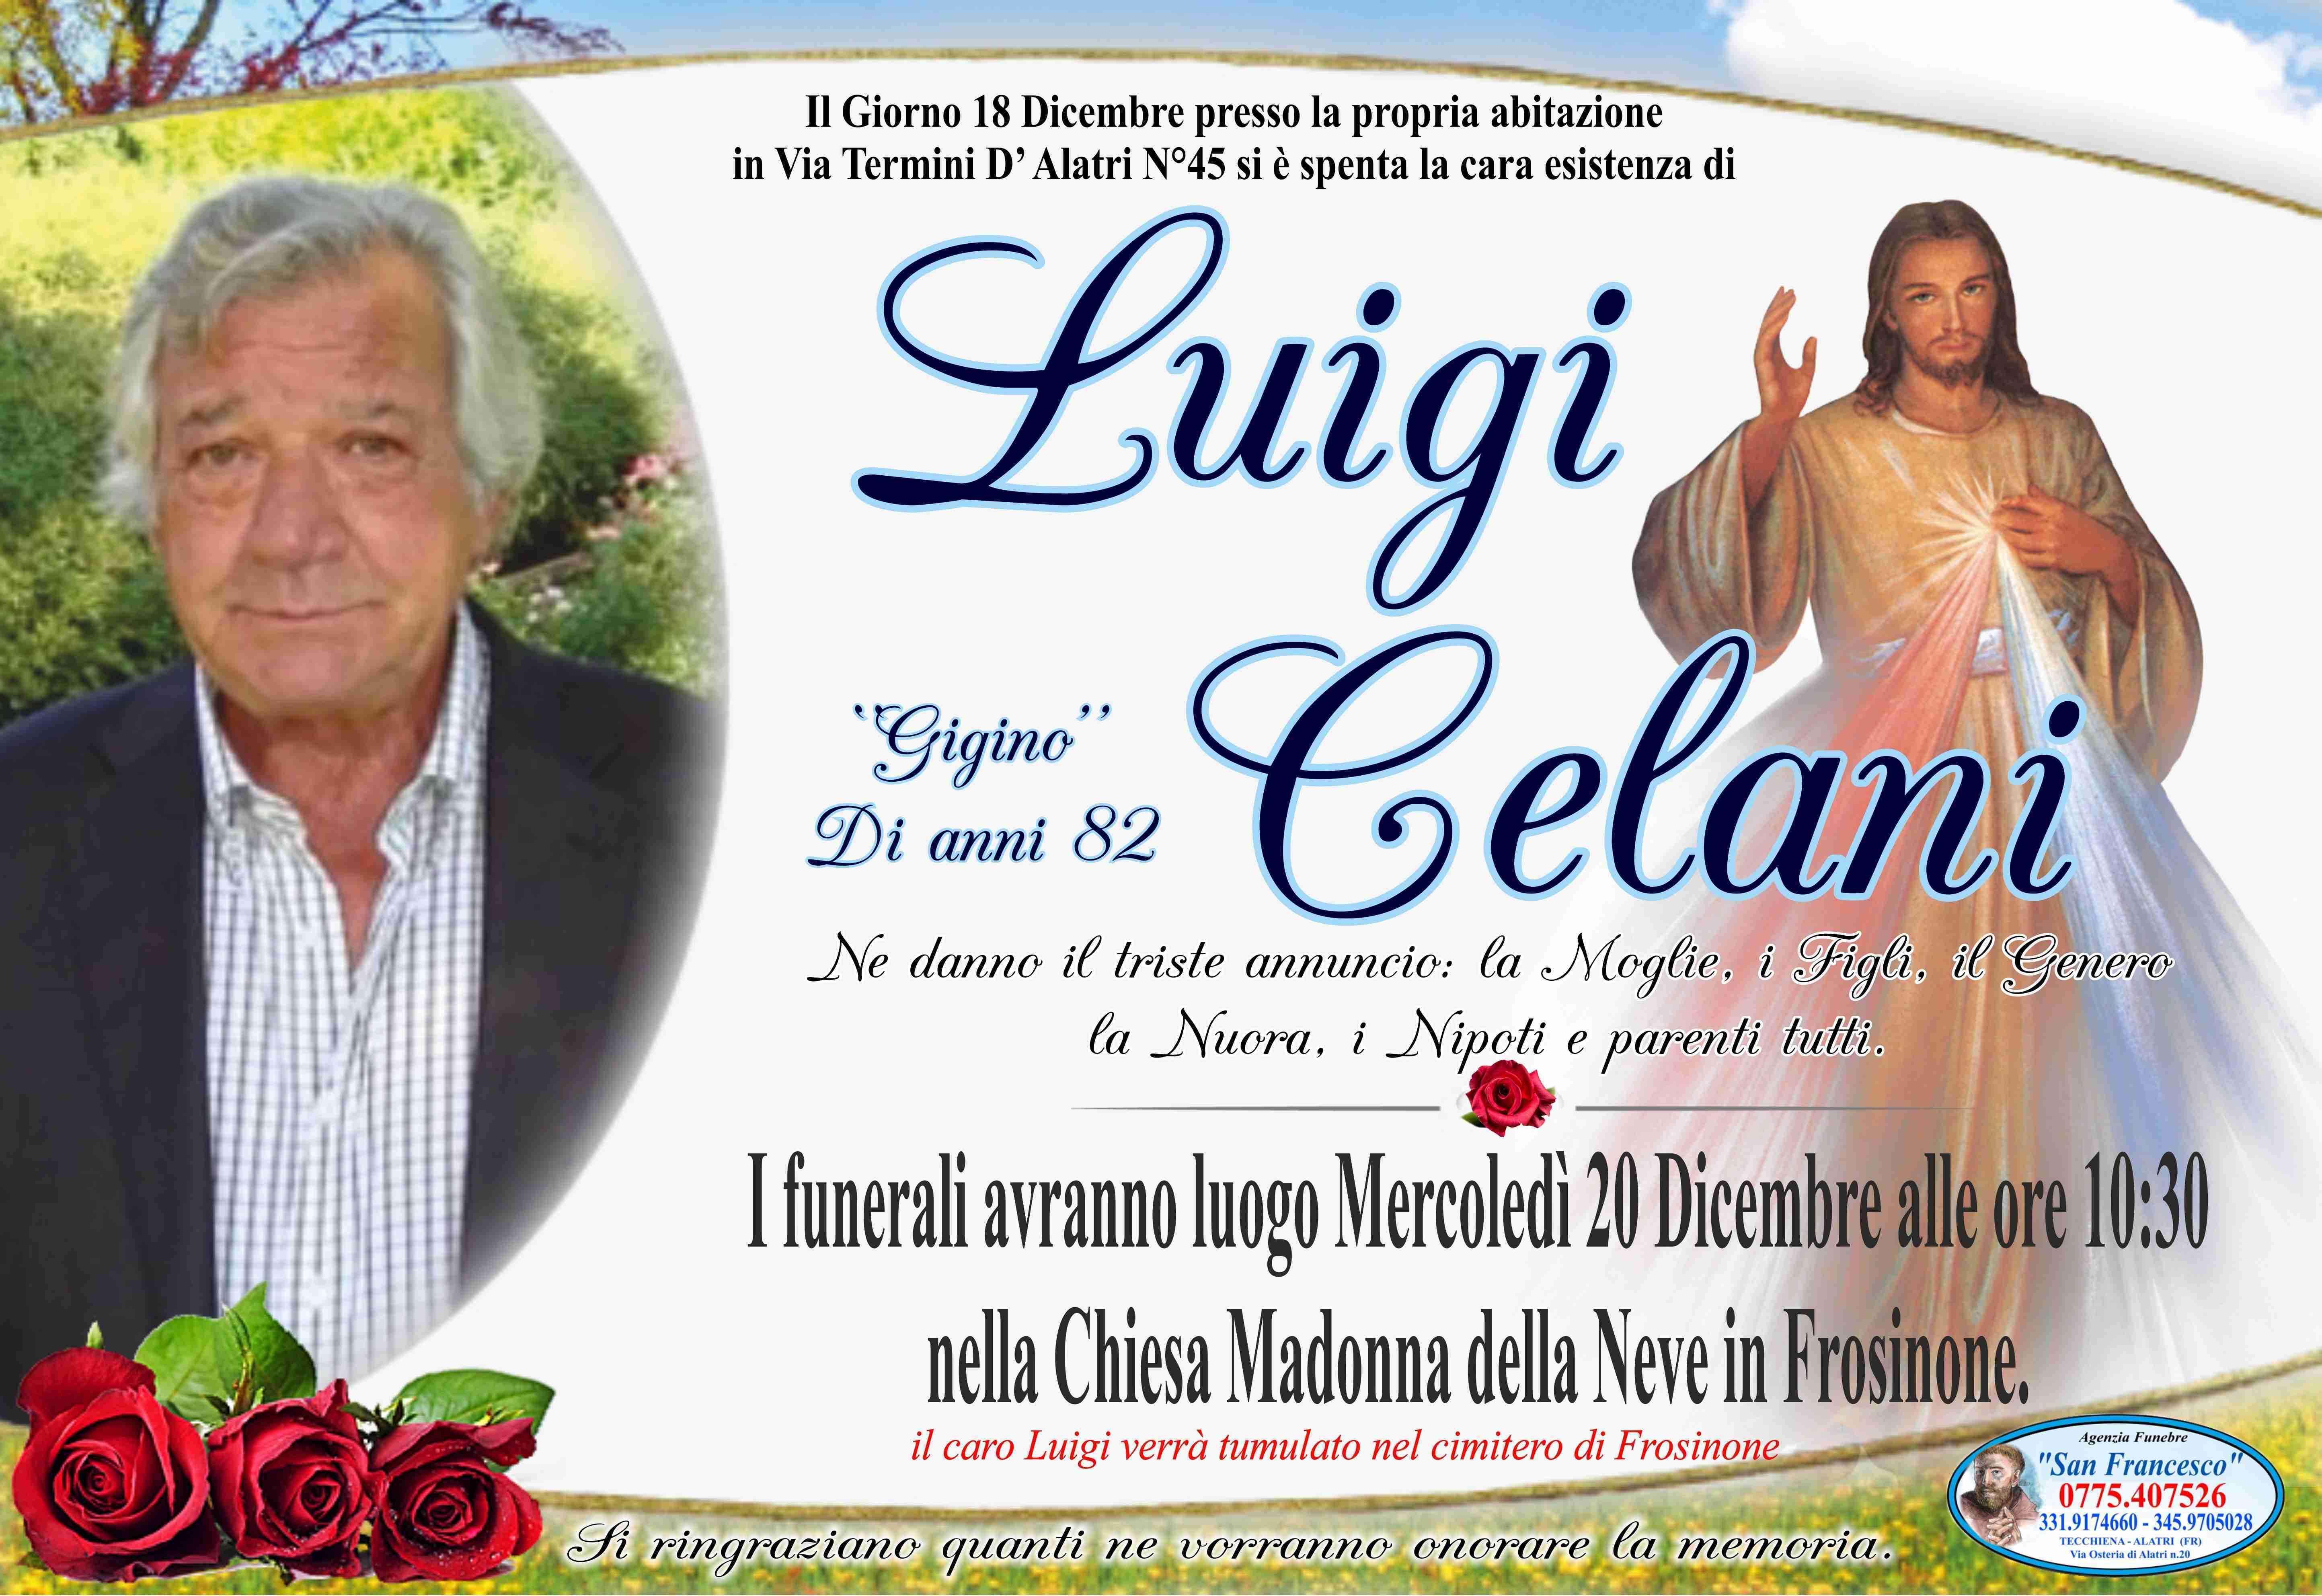 Luigi Celani